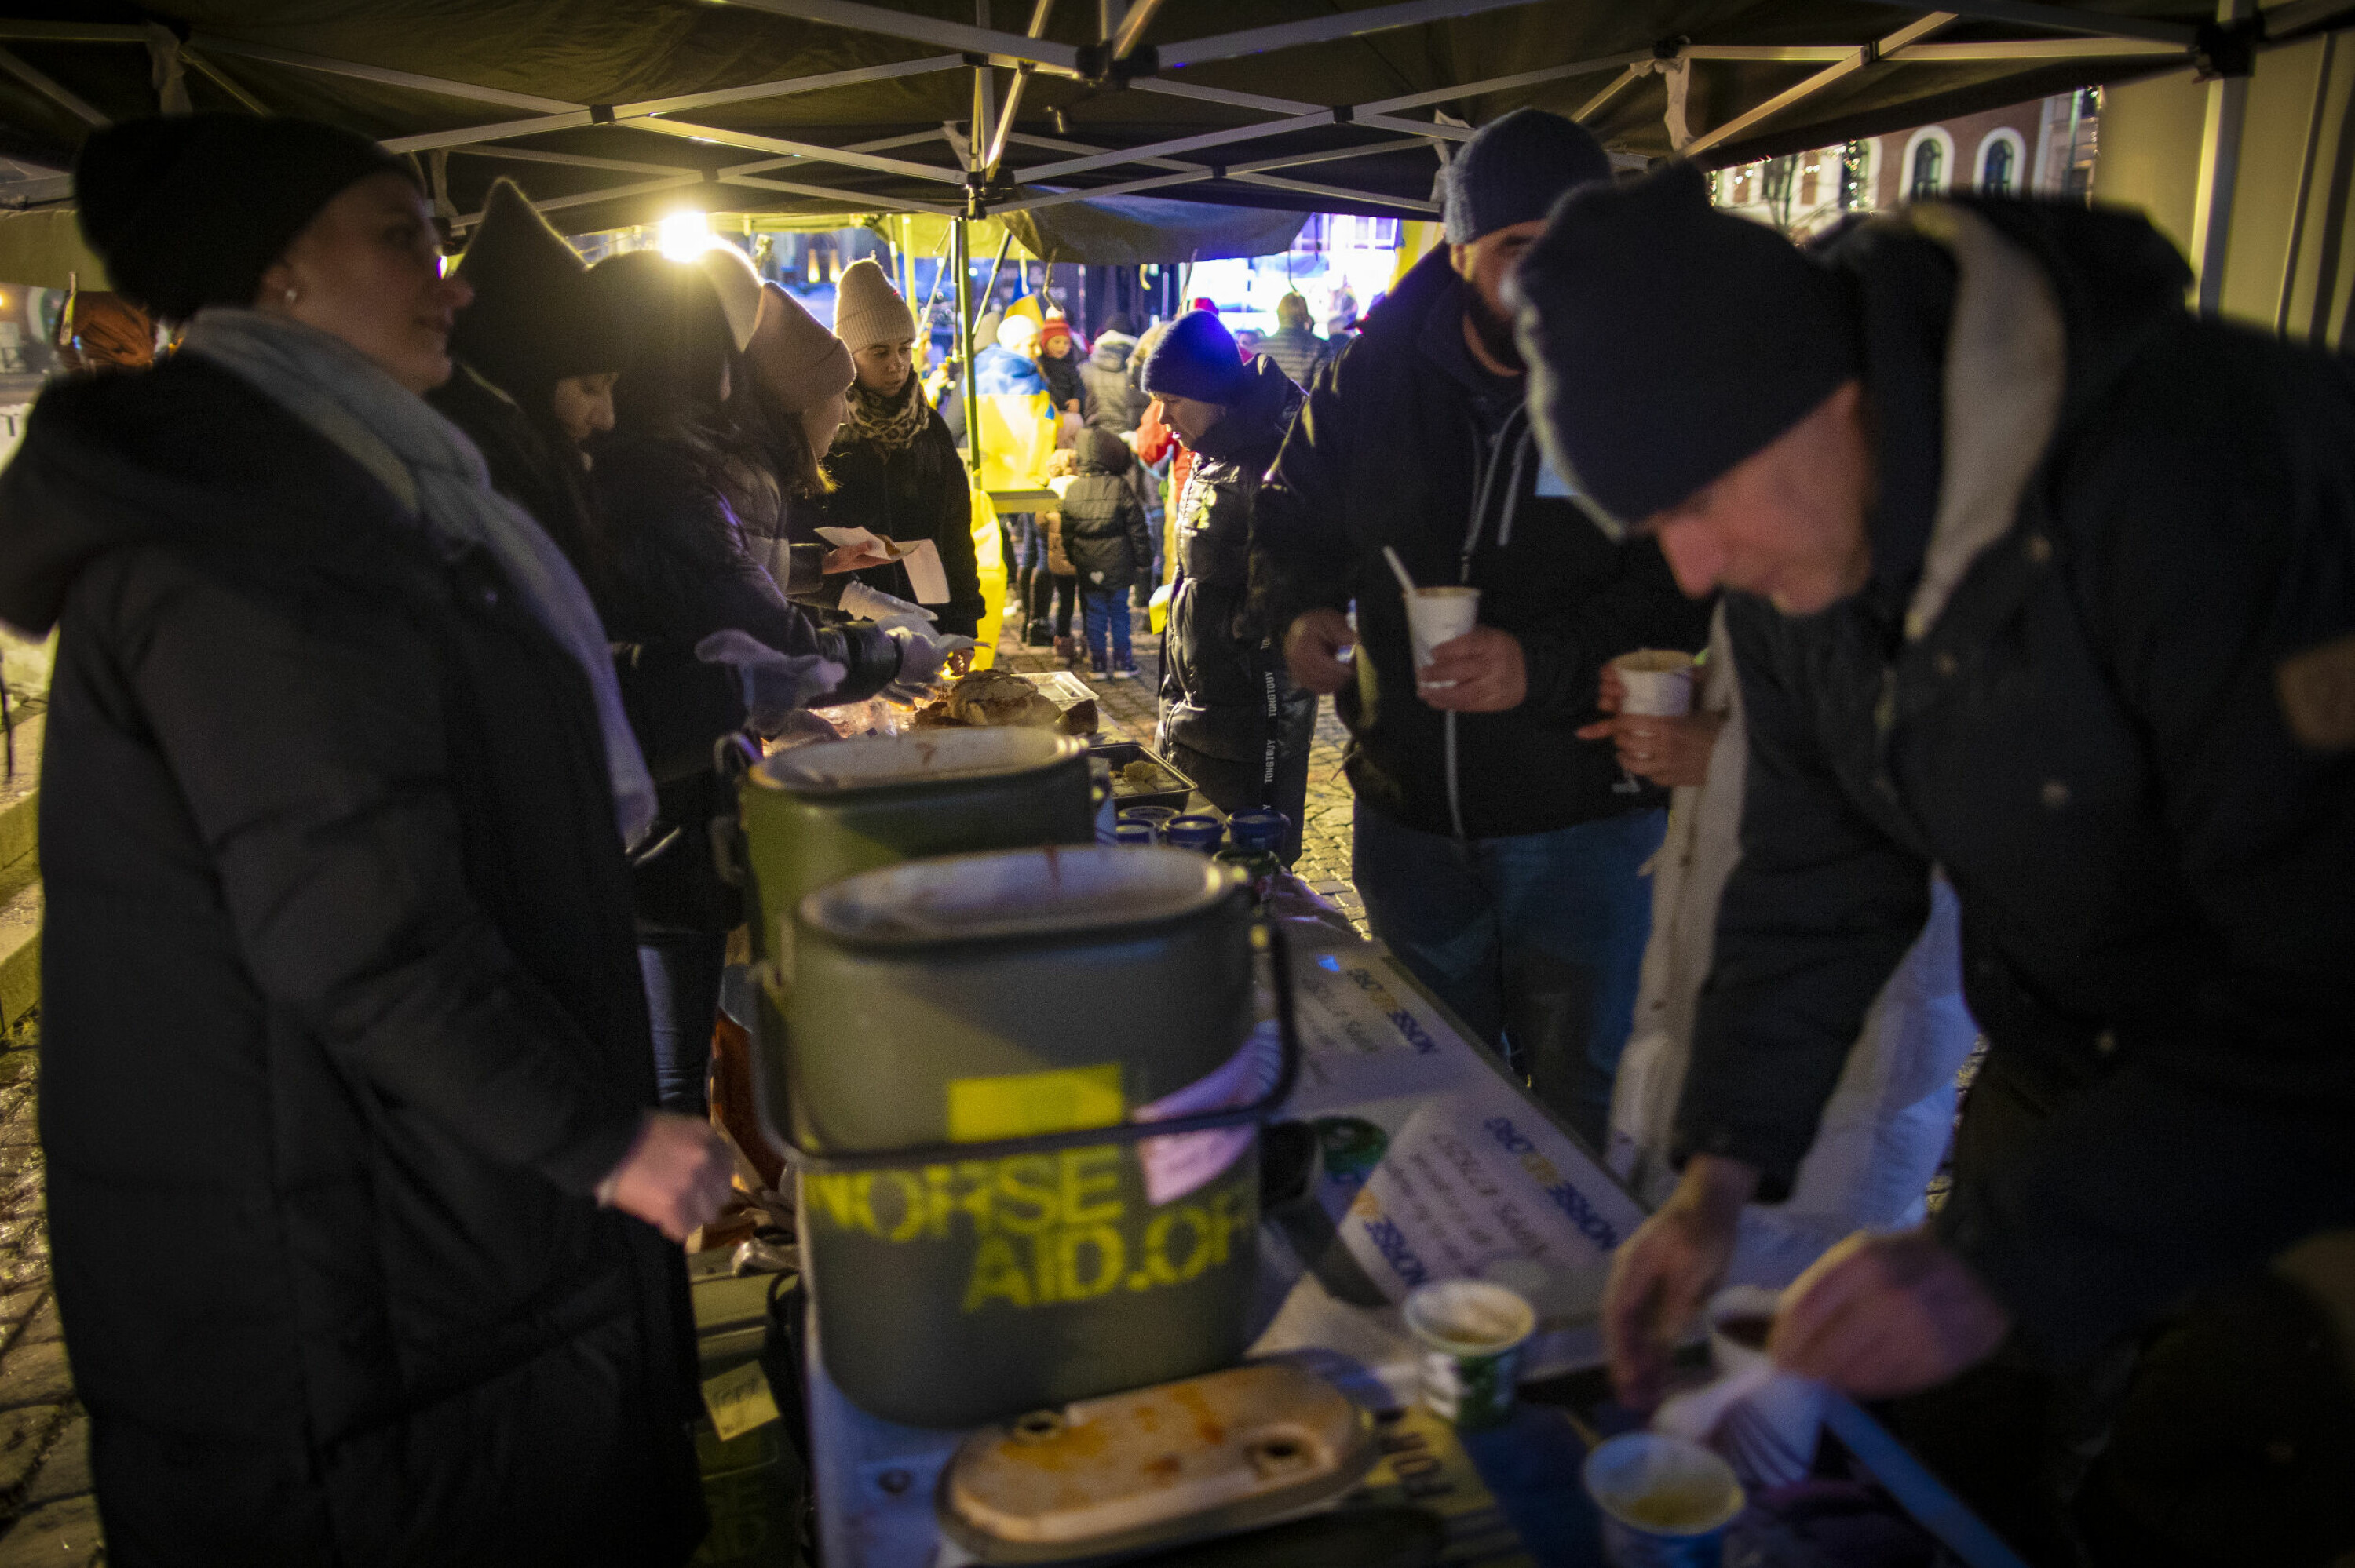 UKRAINSK MAT: Ukrainske flyktninger serverte tradisjonell varmmat fra Norse Aid sitt feltkjøkken.